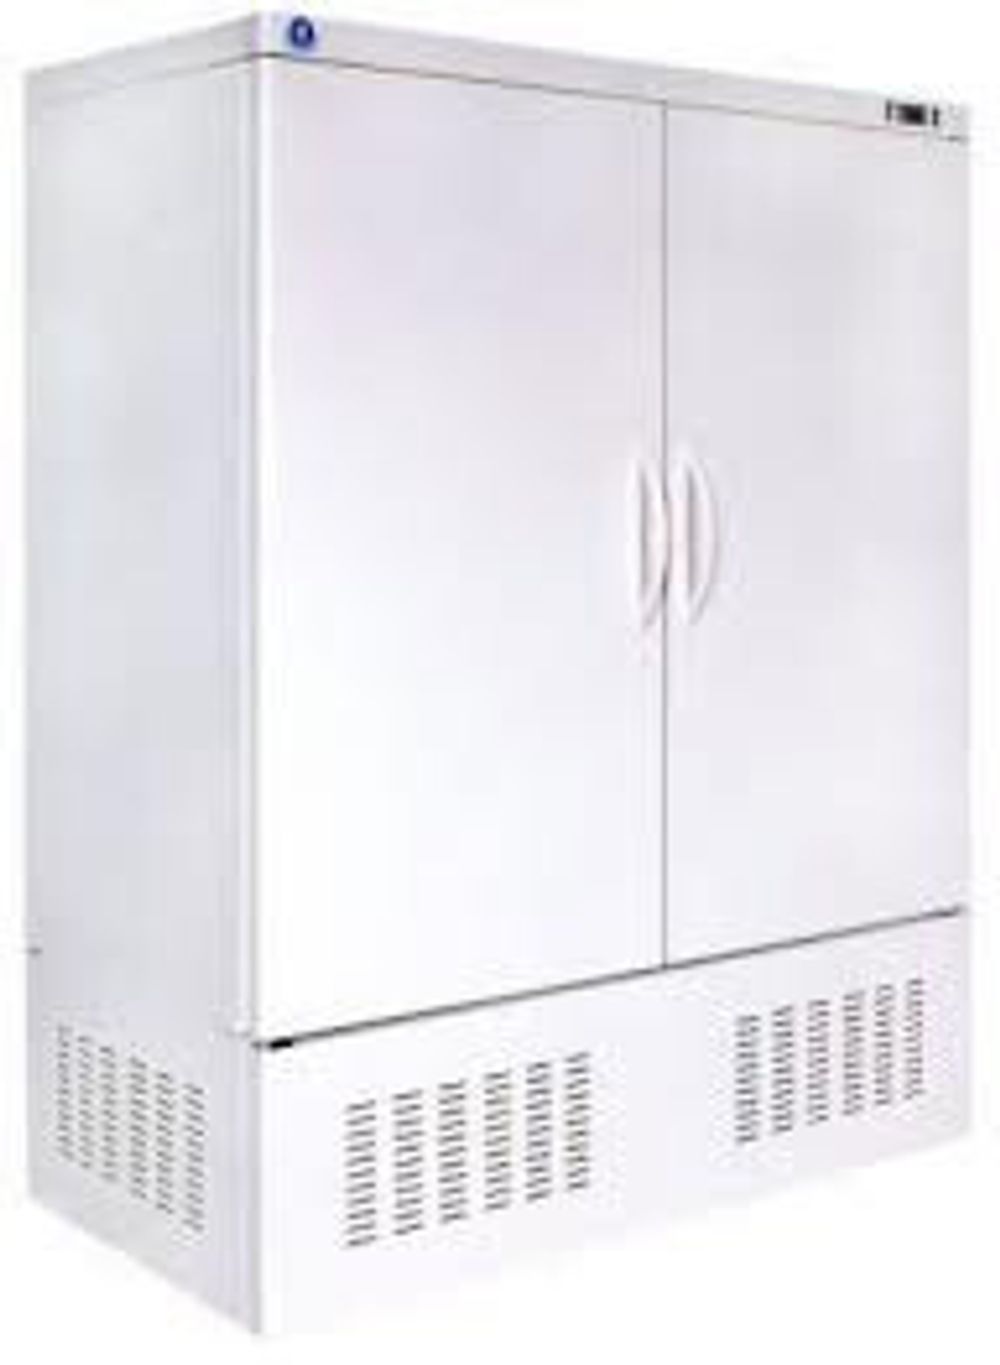 шх 0 56 шкаф холодильный